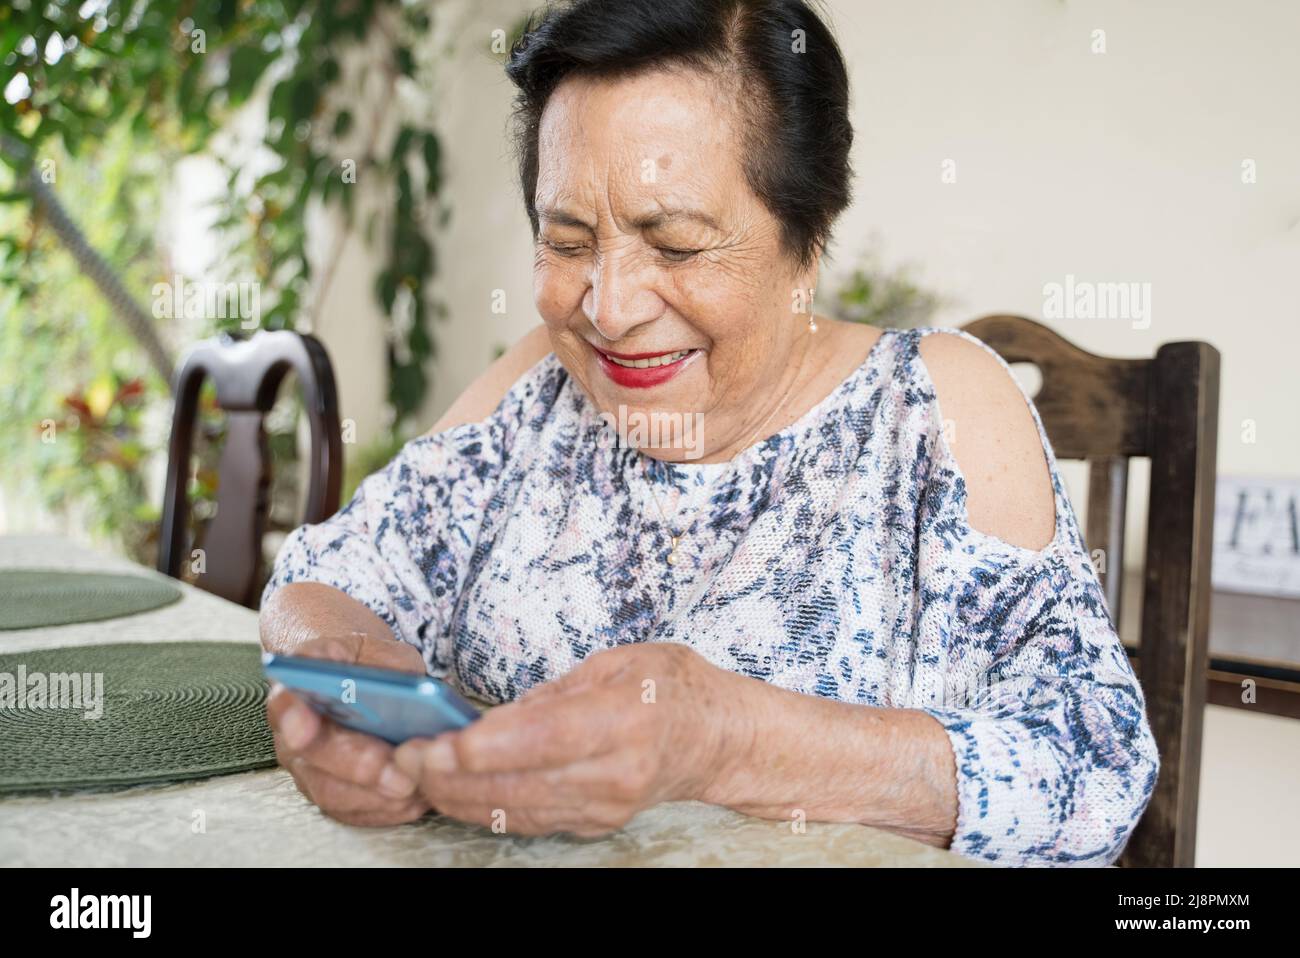 Anziana donna centroamericana che usa uno smartphone. Idea ideale di Latina o ispanica persona che utilizza la tecnologia per comunicare con amici e familiari Foto Stock